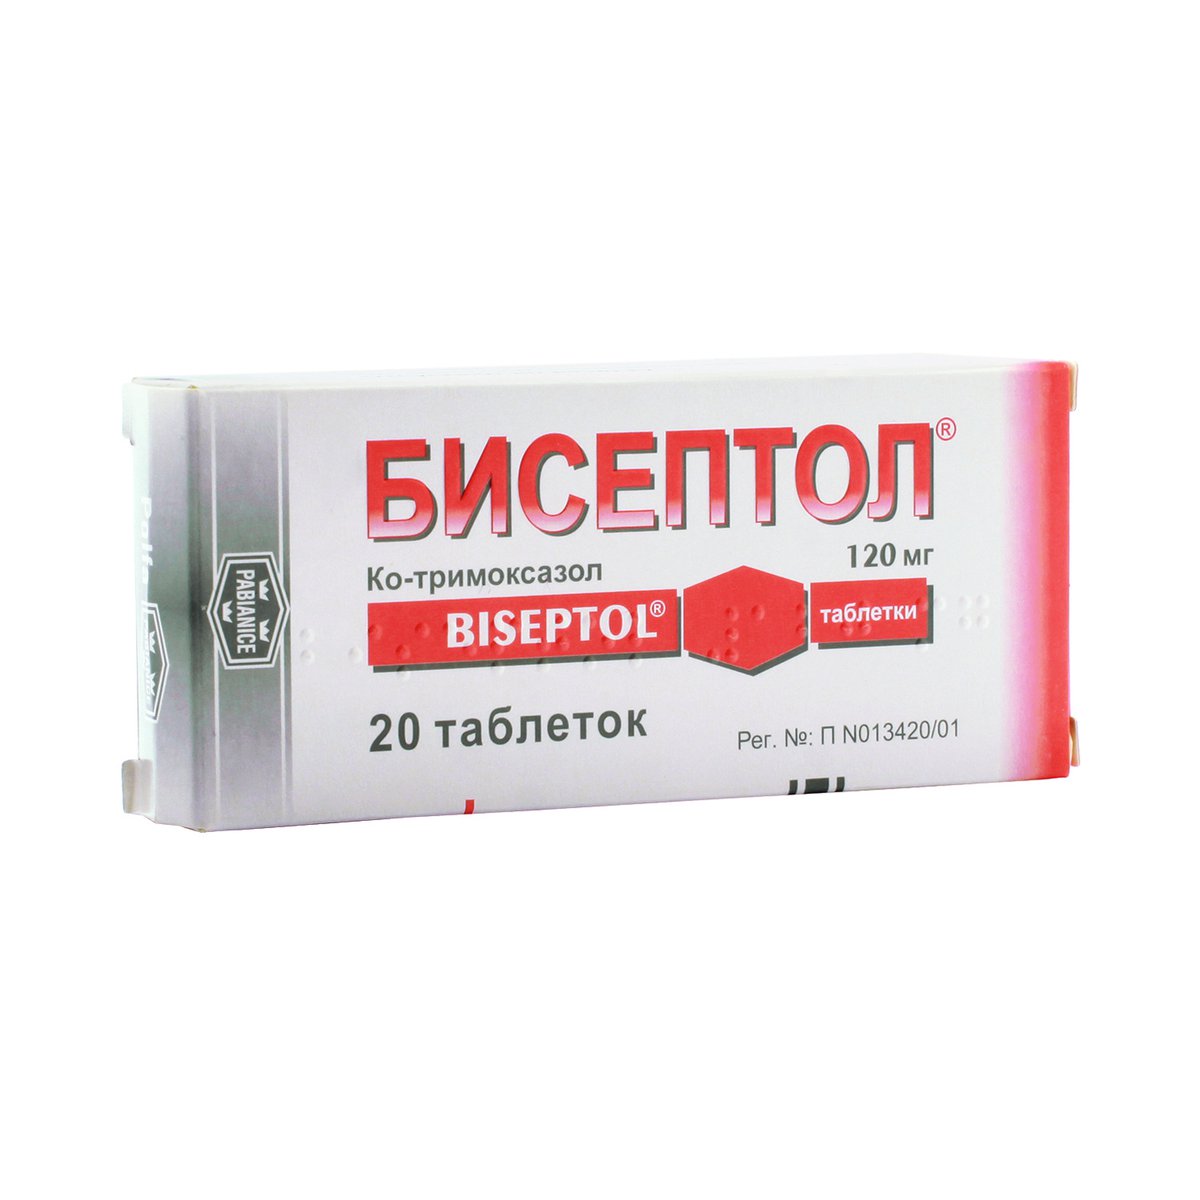 Бисептол (таблетки, 20 шт, 120 мг, для приема внутрь) - цена,  .